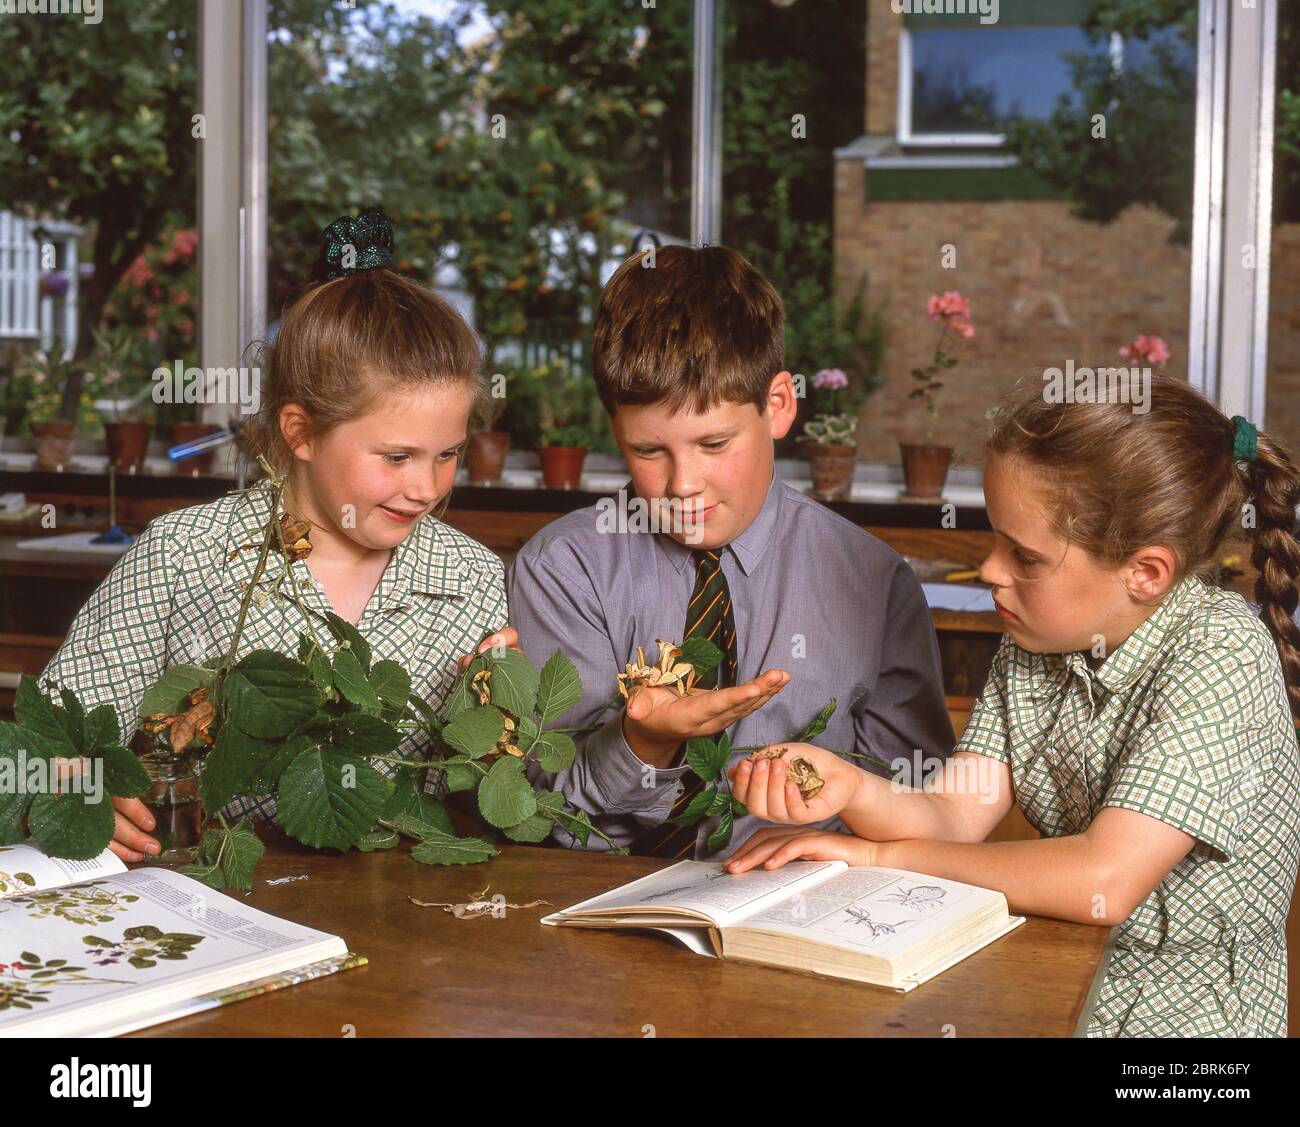 Kinder, die Grashüpfer im Biologieunterricht betrachten, Surrey, England, Vereinigtes Königreich Stockfoto